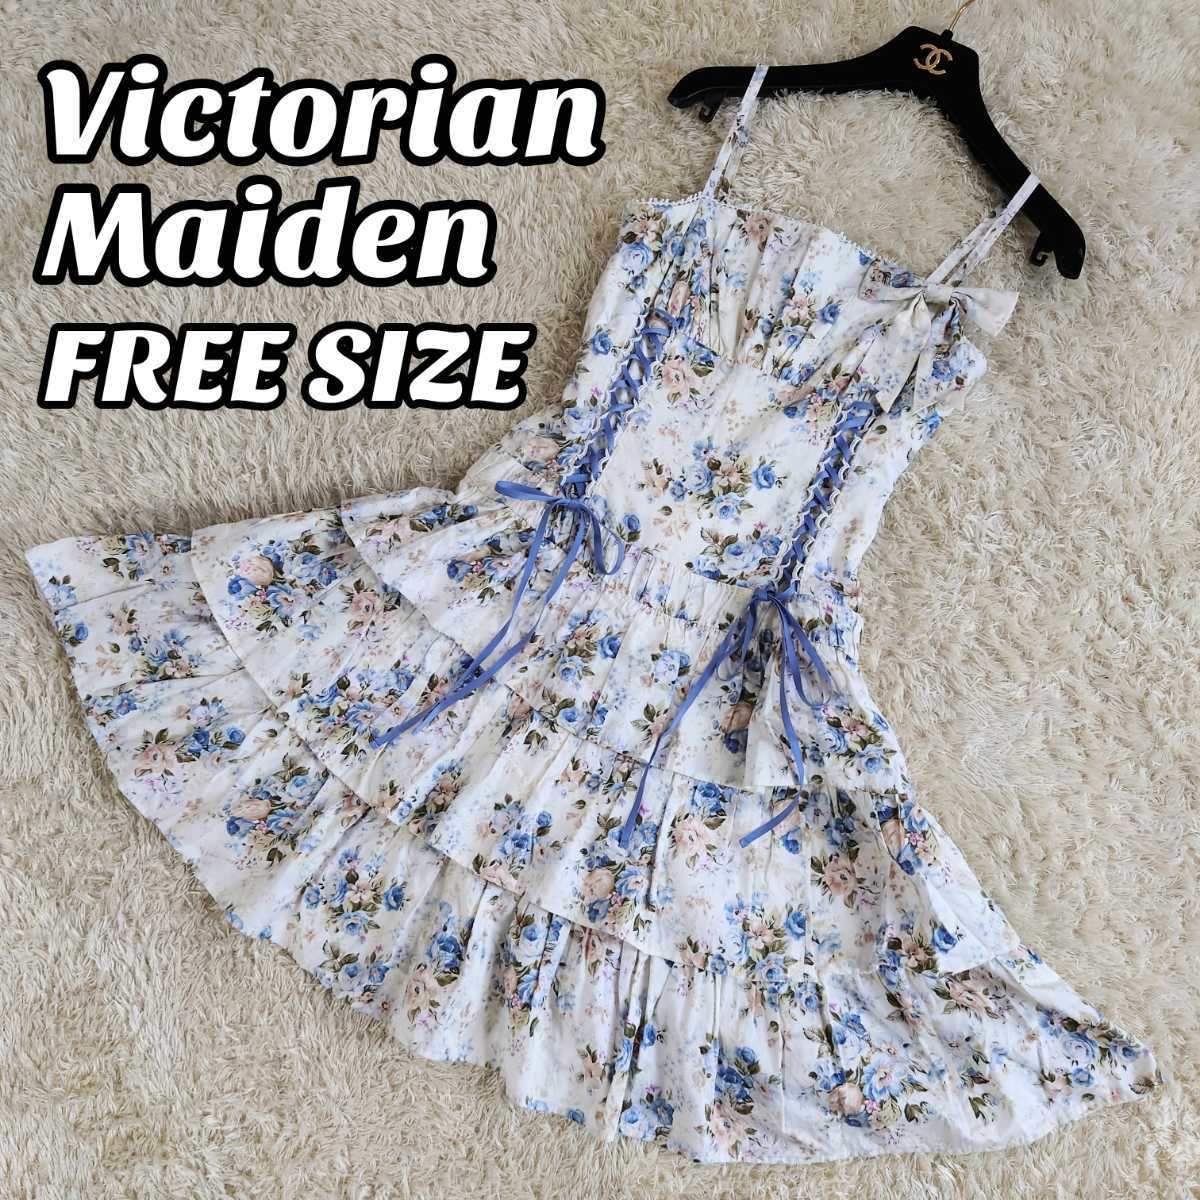 Victorian Maiden ローズブーケストライプドレス - am.sda.ba